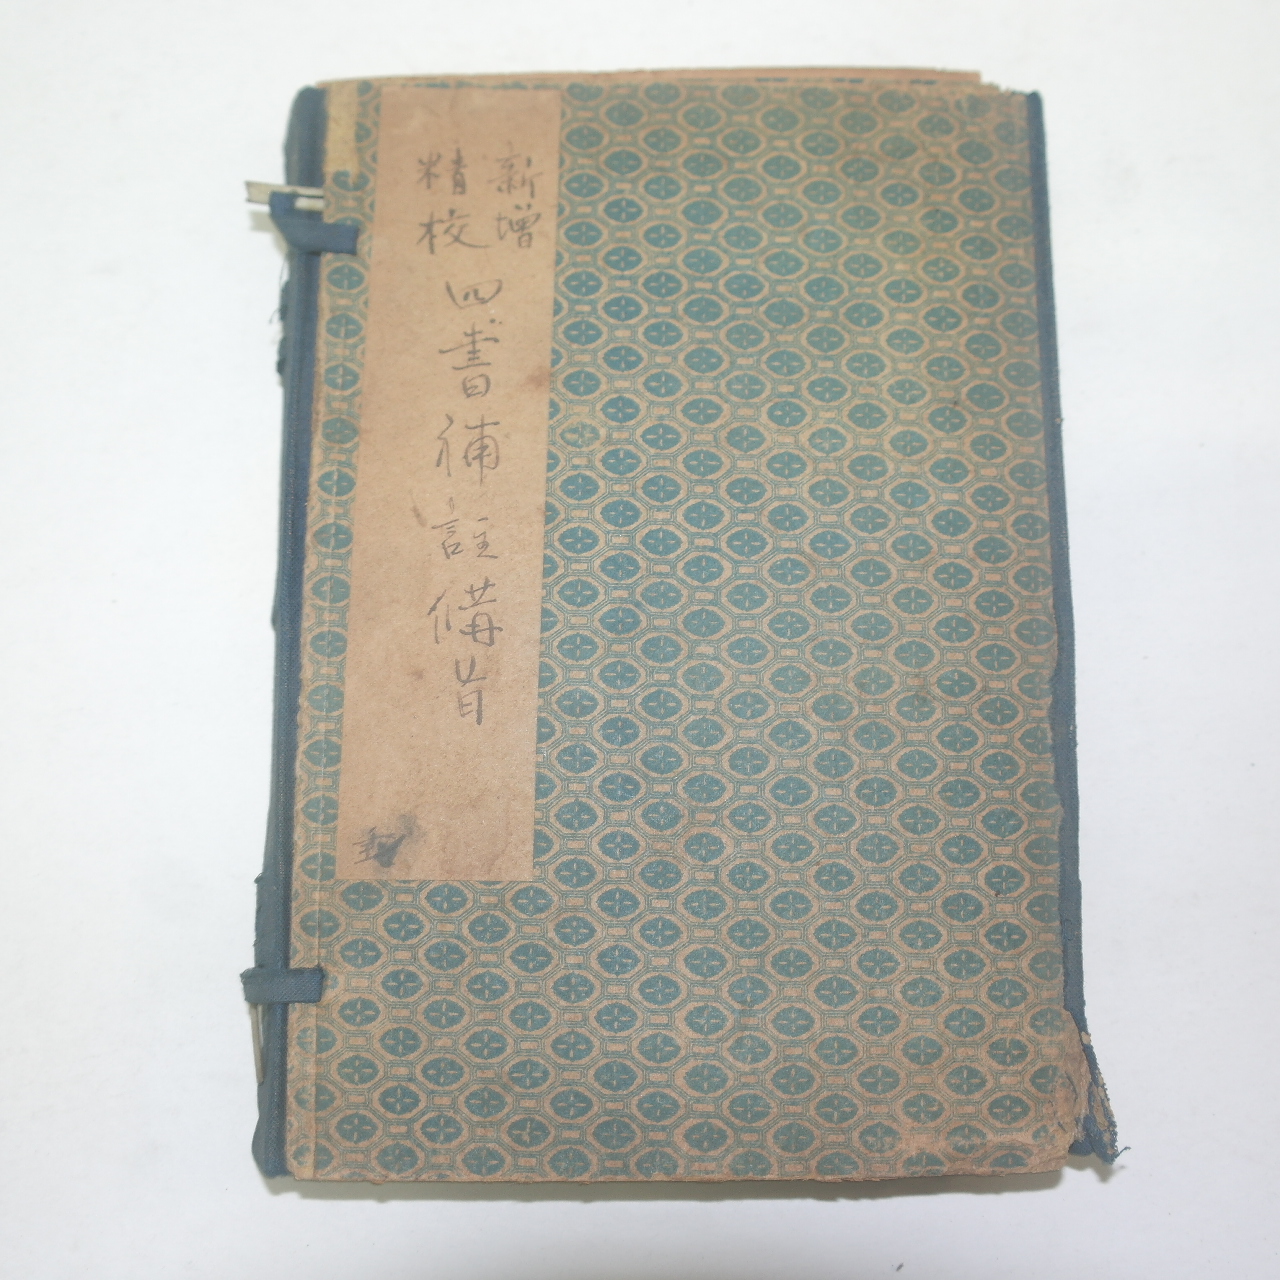 1914년(民國3年) 중국상해본 사서보주비지 5책